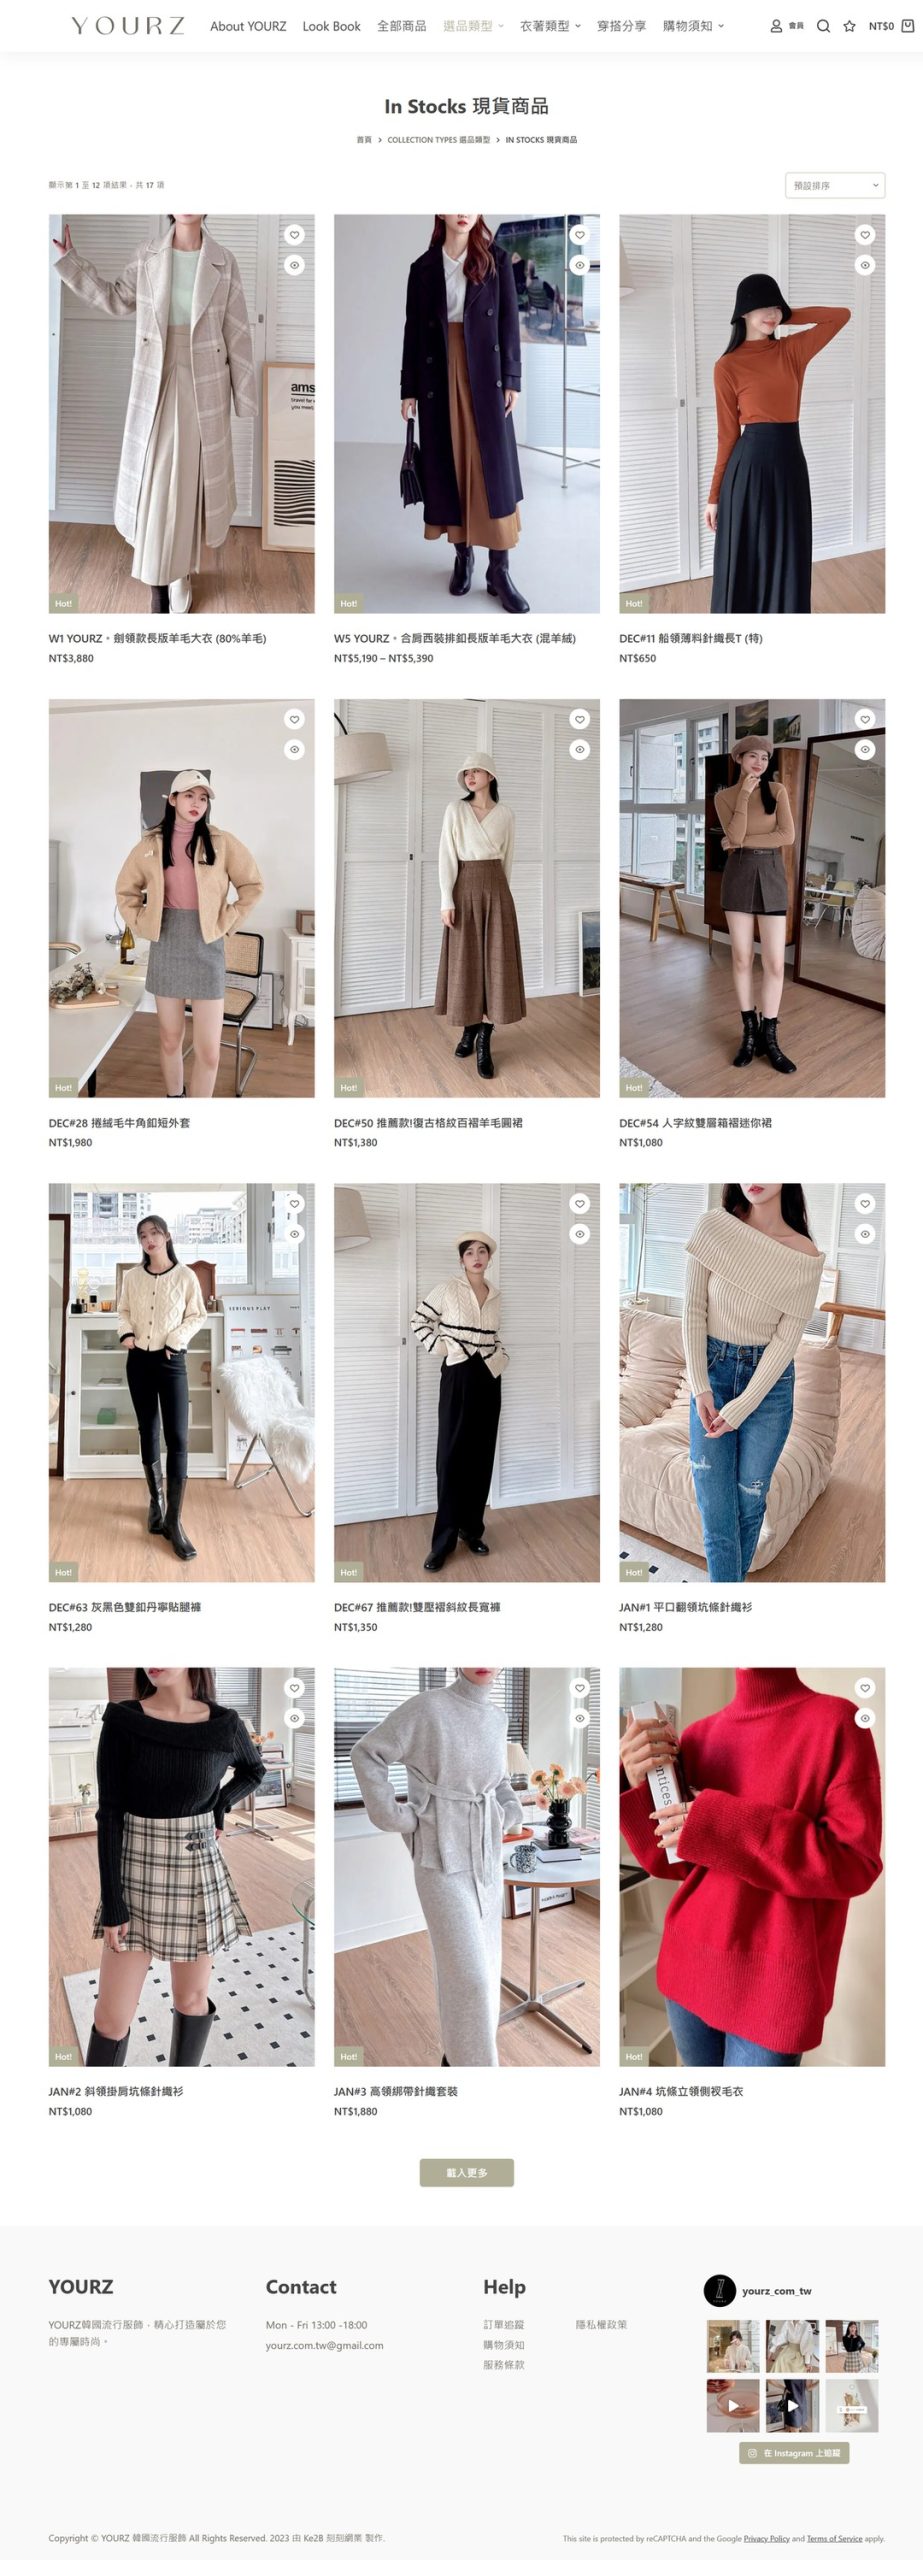 YOURZ 韓國流行服飾 - 商品列表進階 RWD 網頁設計 - 電腦版